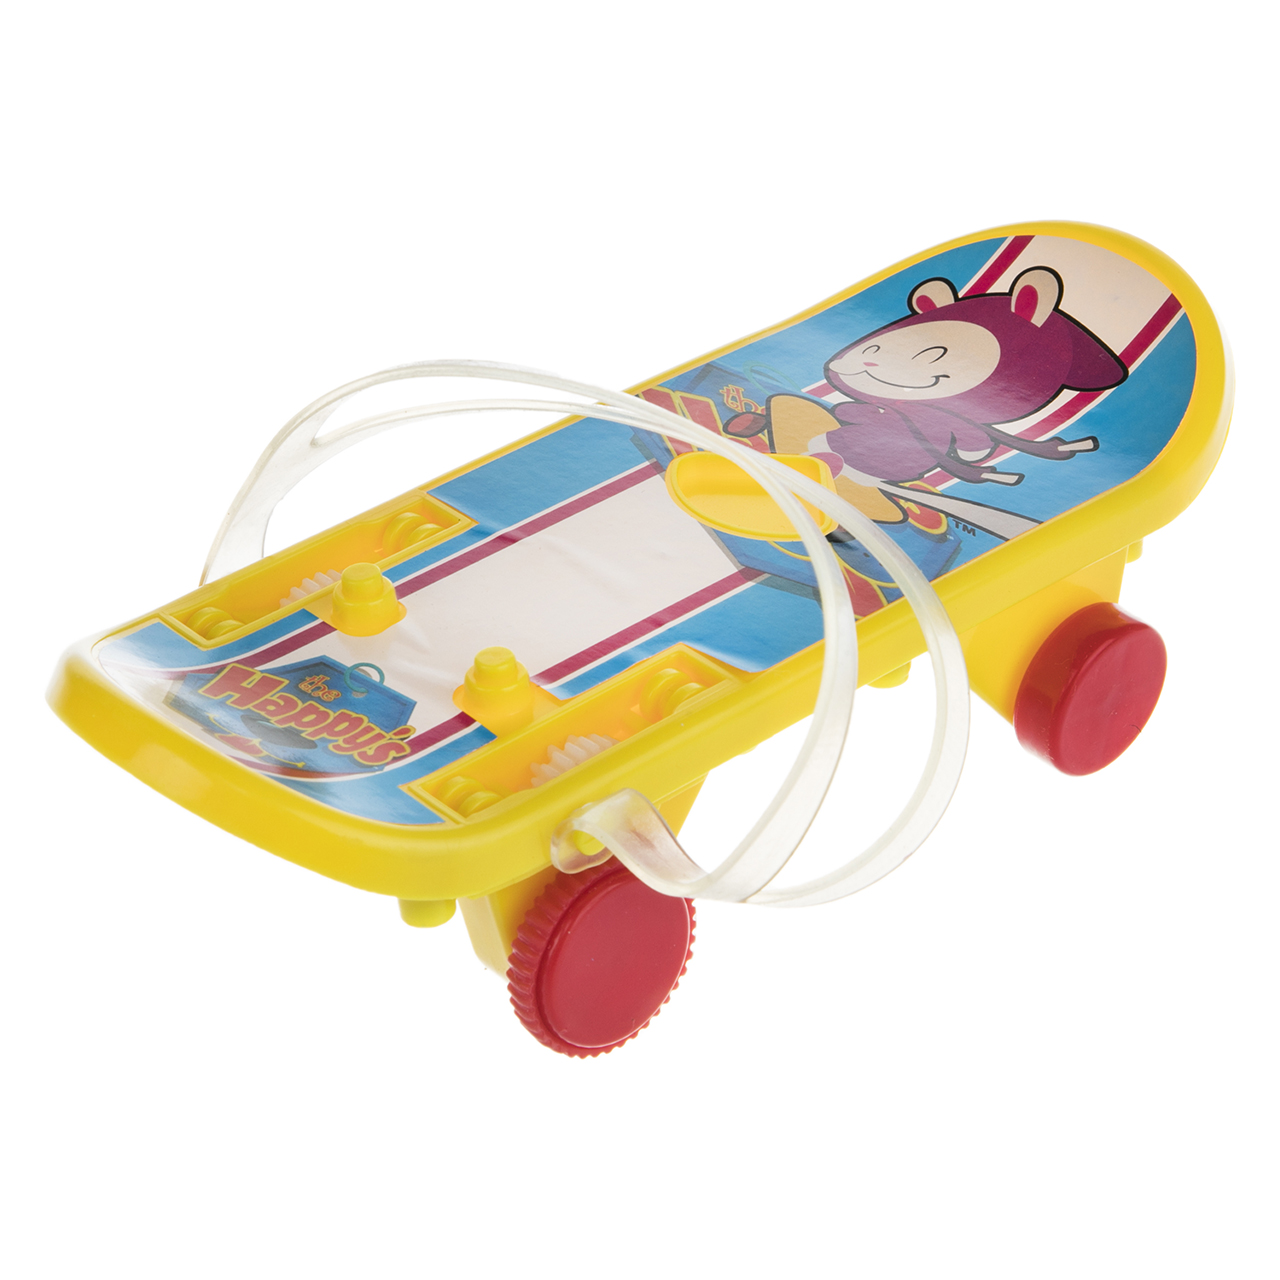 اسکیت برد اسباب بازی سیمبا مدل Zippy Skateboard